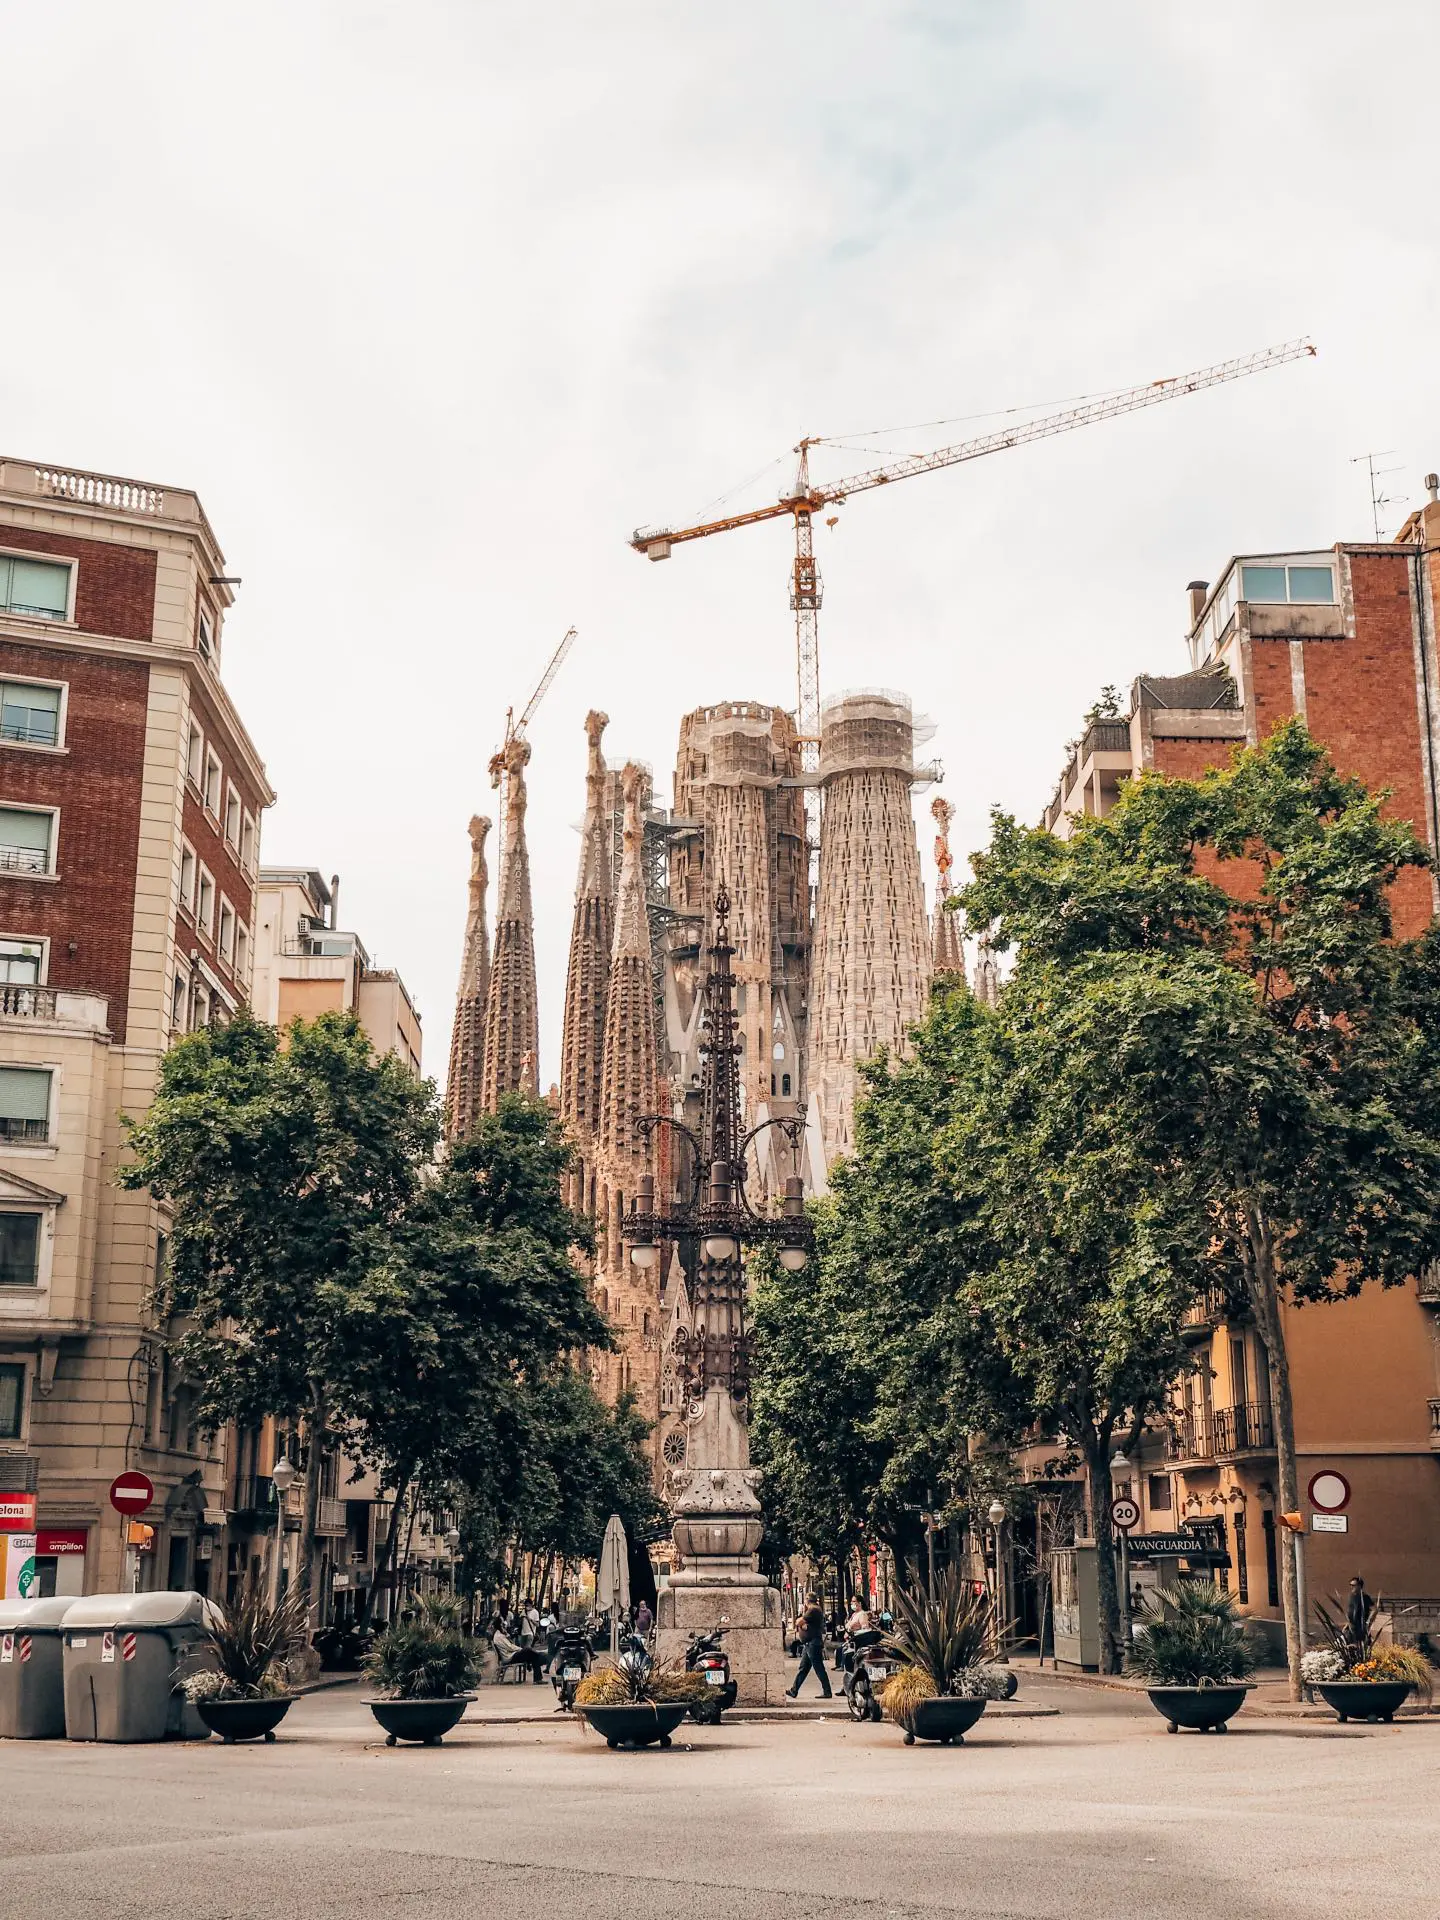 Sagrada Familia, visita al sitio más emblemático de Barcelona